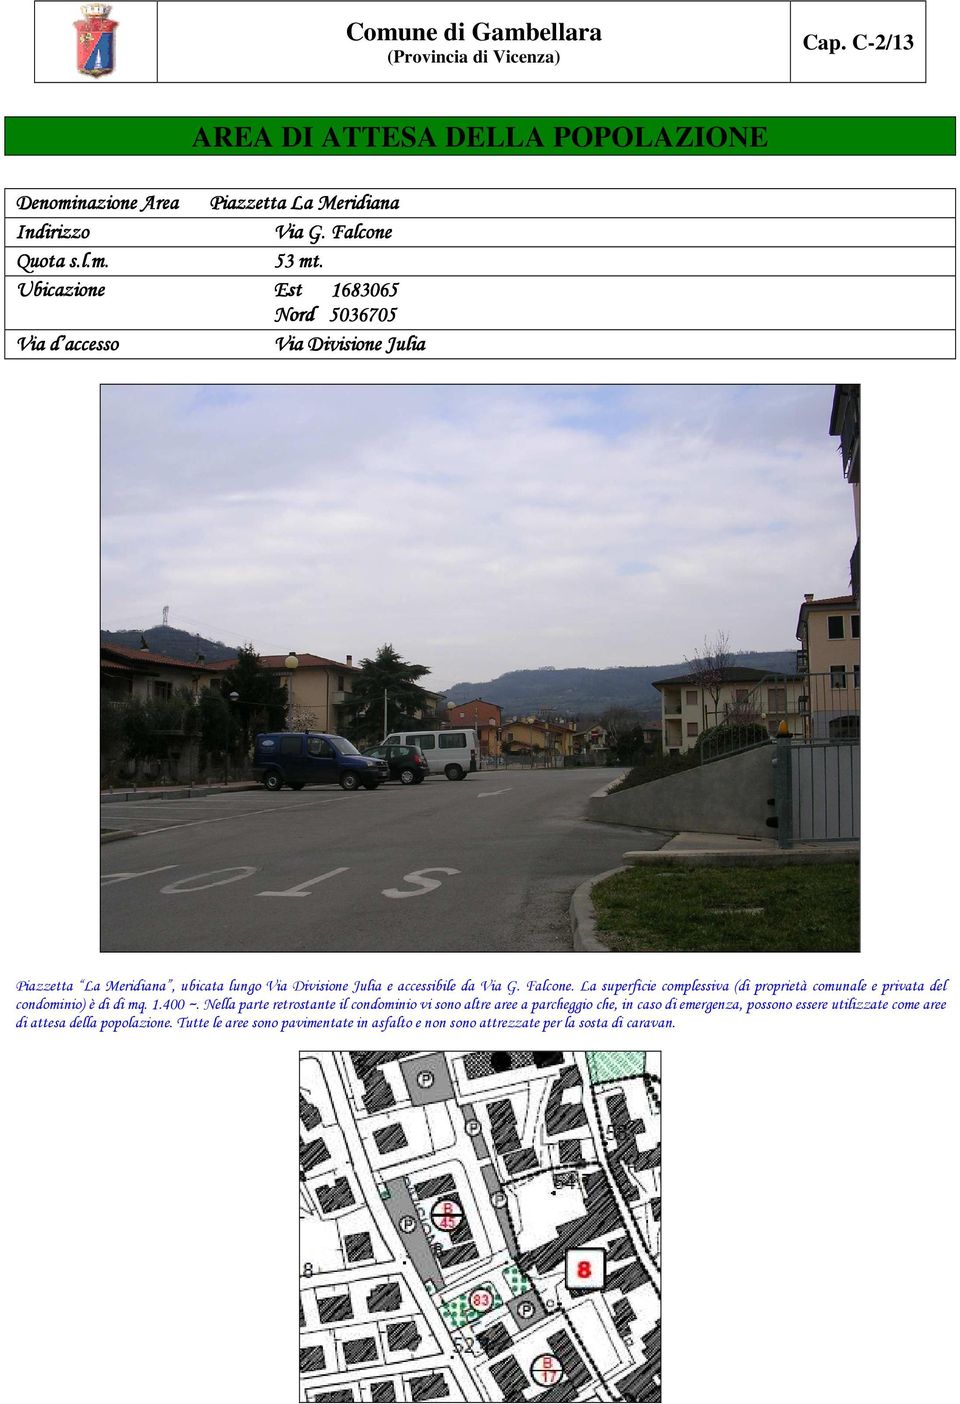 Falcone. La superficie complessiva (di proprietà comunale e privata del condominio) è di di mq. 1.400 ~.